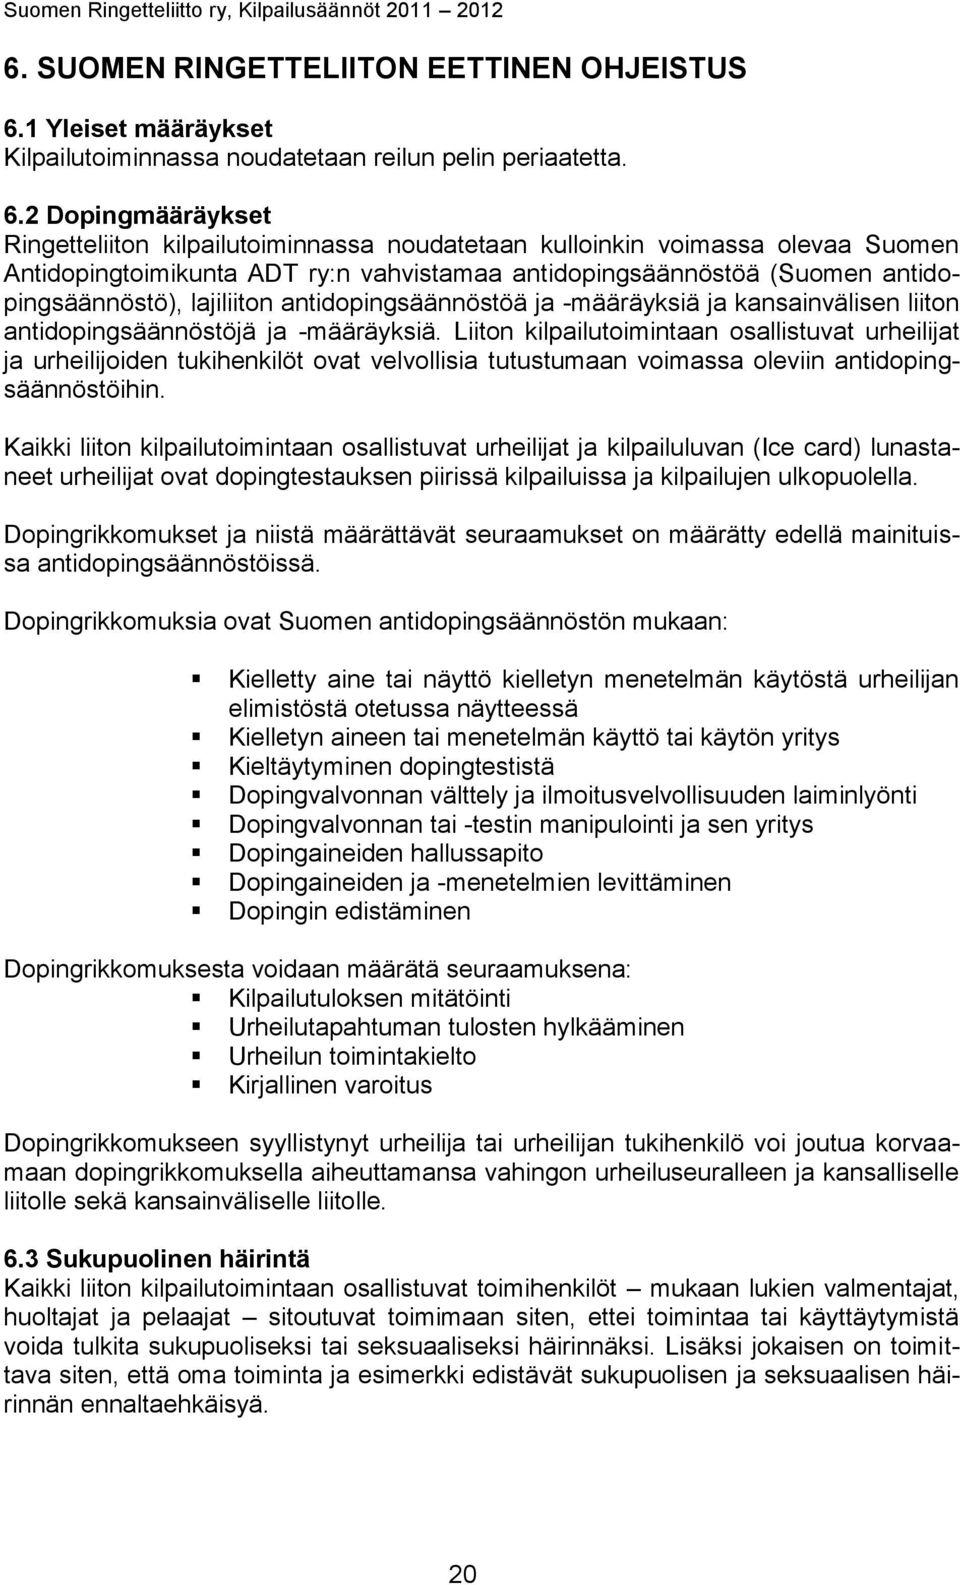 2 Dopingmääräykset Ringetteliiton kilpailutoiminnassa noudatetaan kulloinkin voimassa olevaa Suomen Antidopingtoimikunta ADT ry:n vahvistamaa antidopingsäännöstöä (Suomen antidopingsäännöstö),